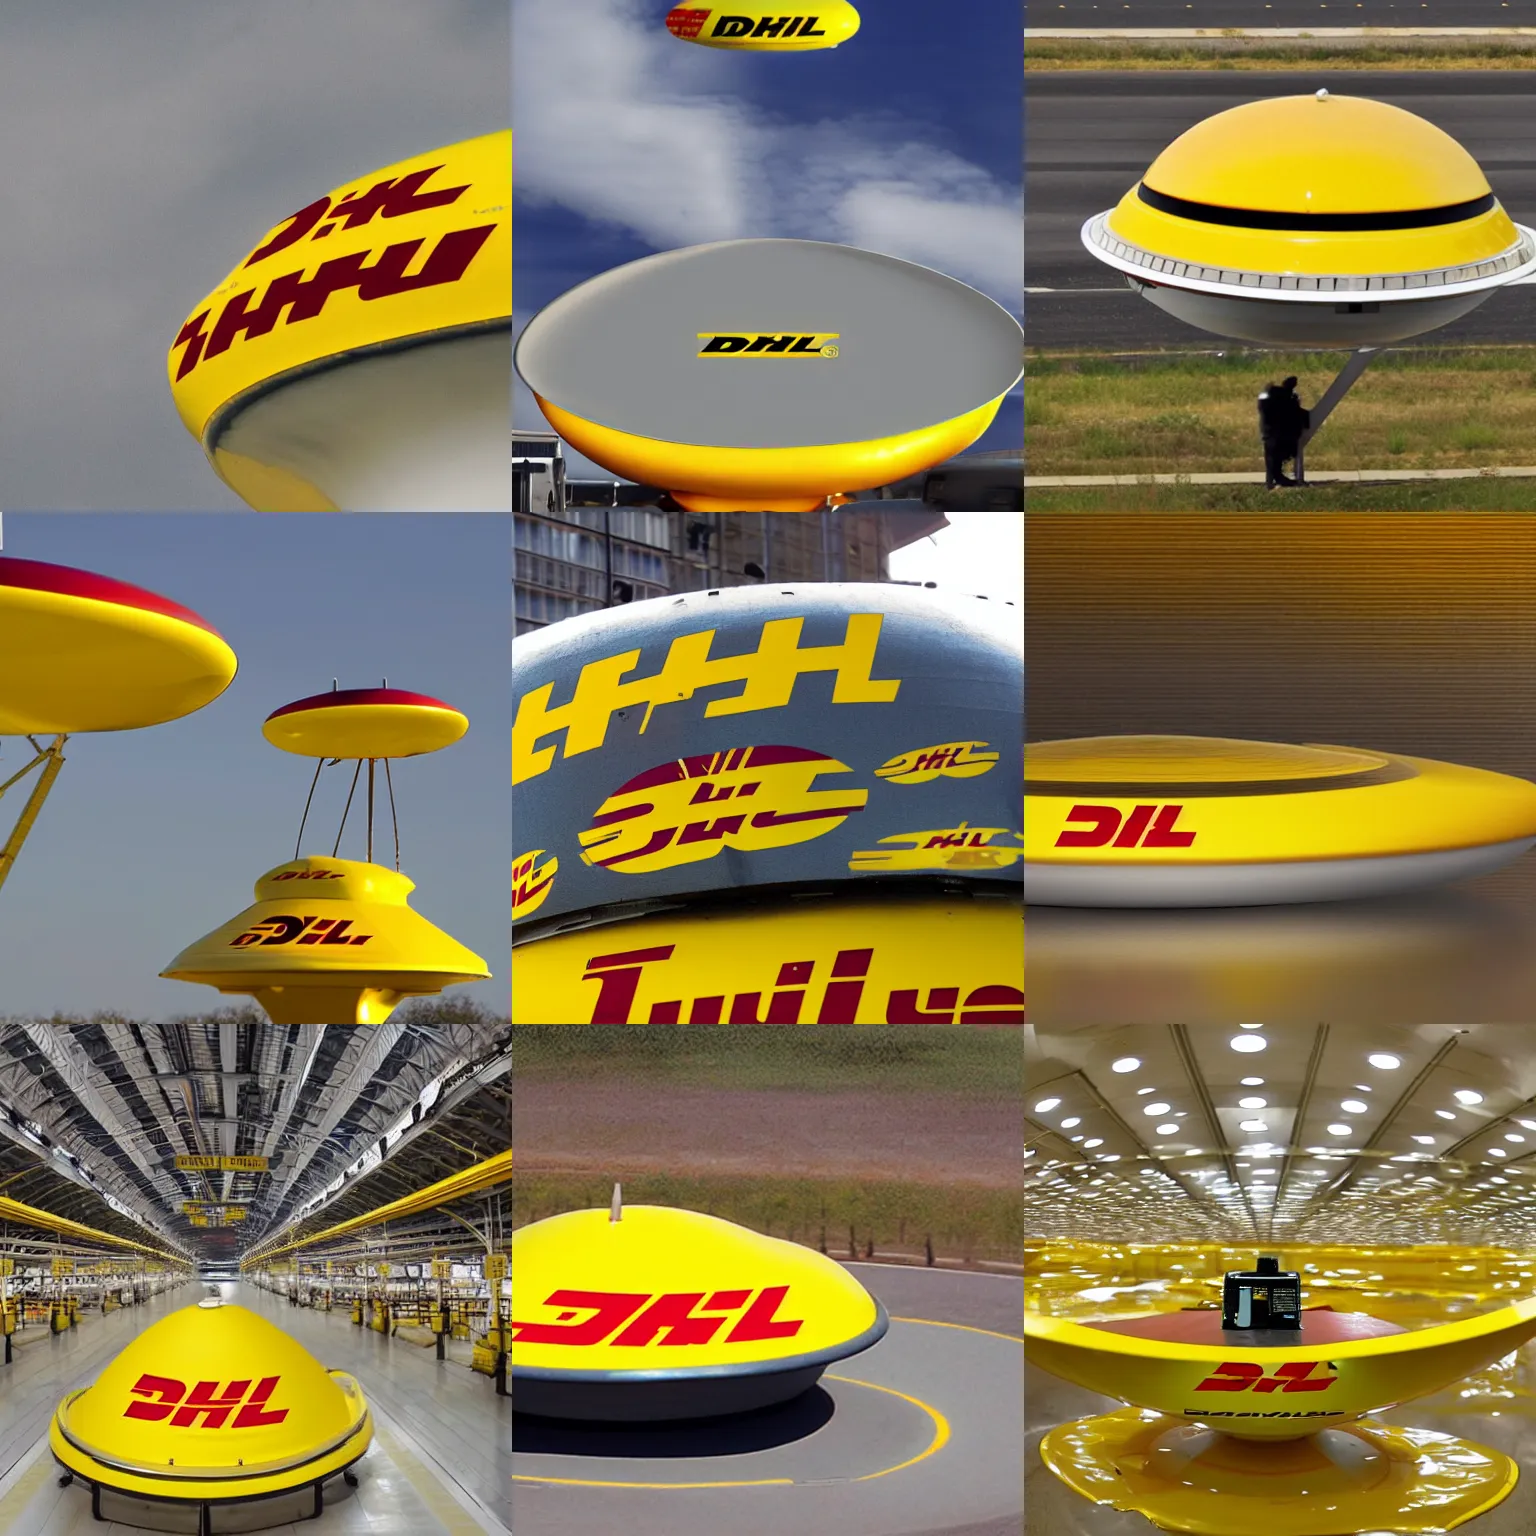 Prompt: dhl flying saucer